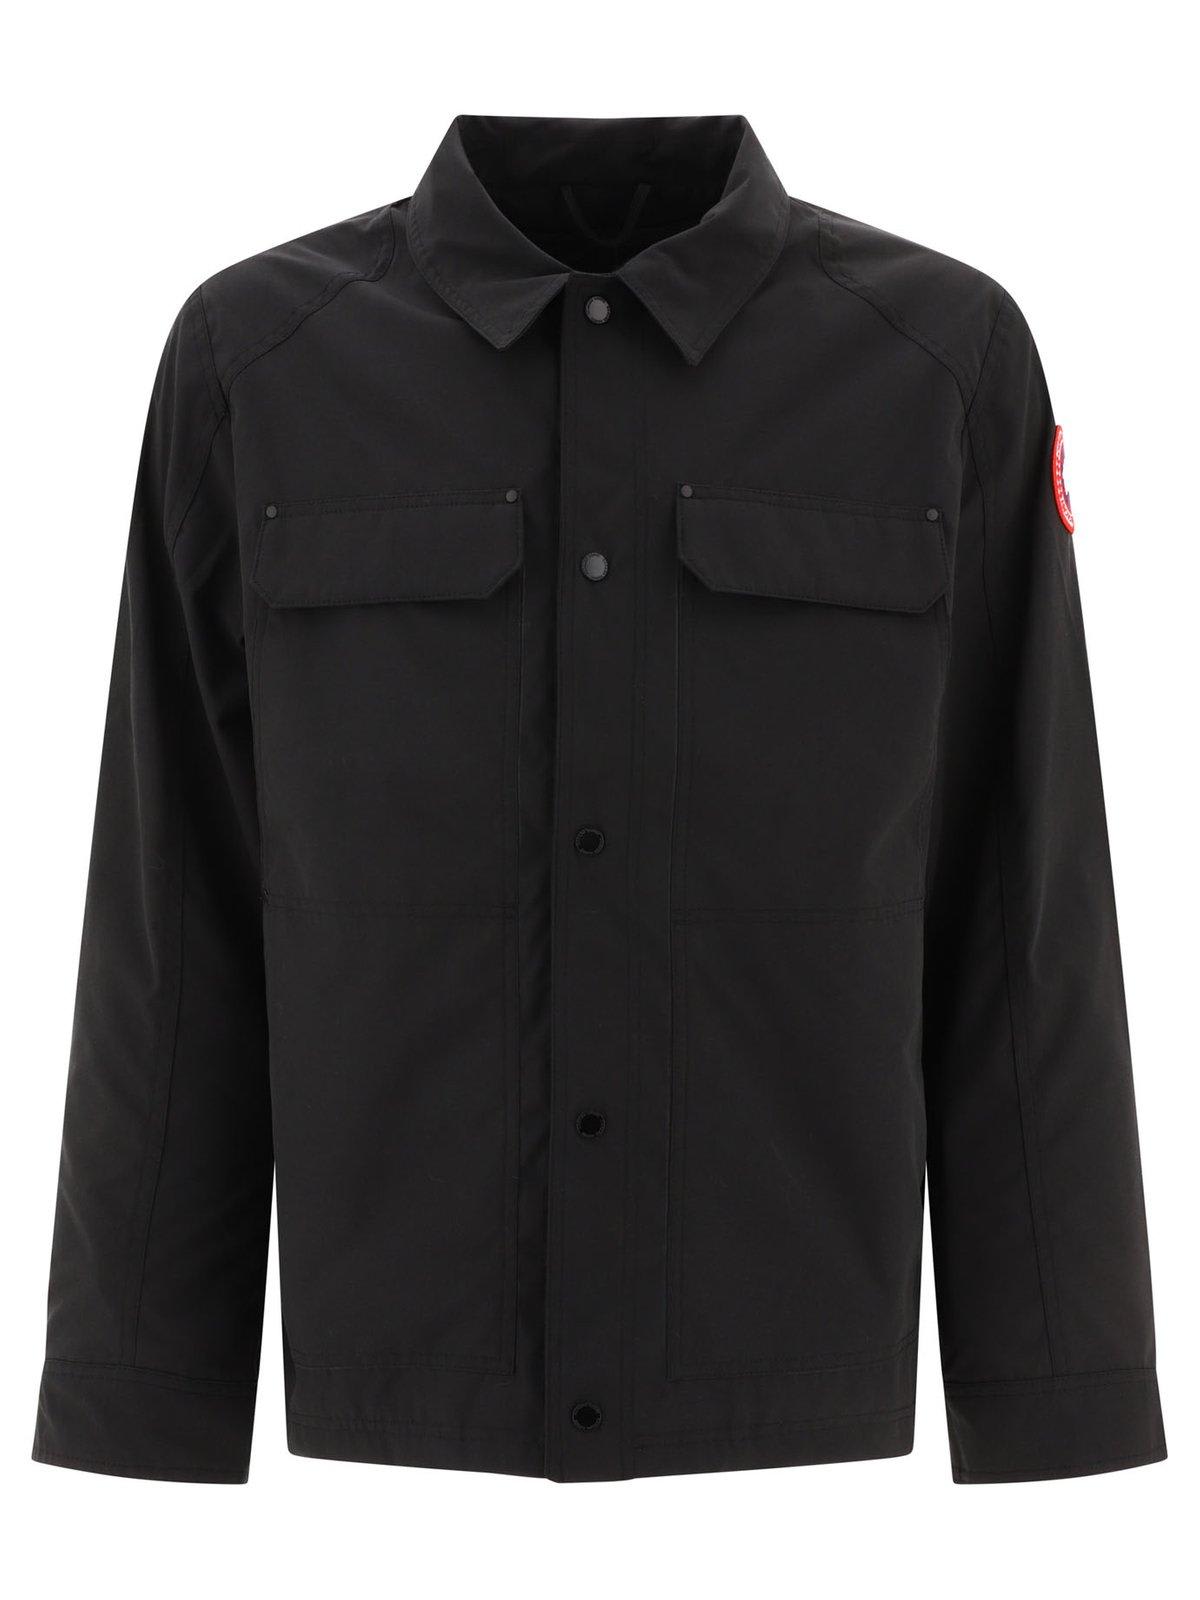 Burnaby Chore Overshirt Jacket